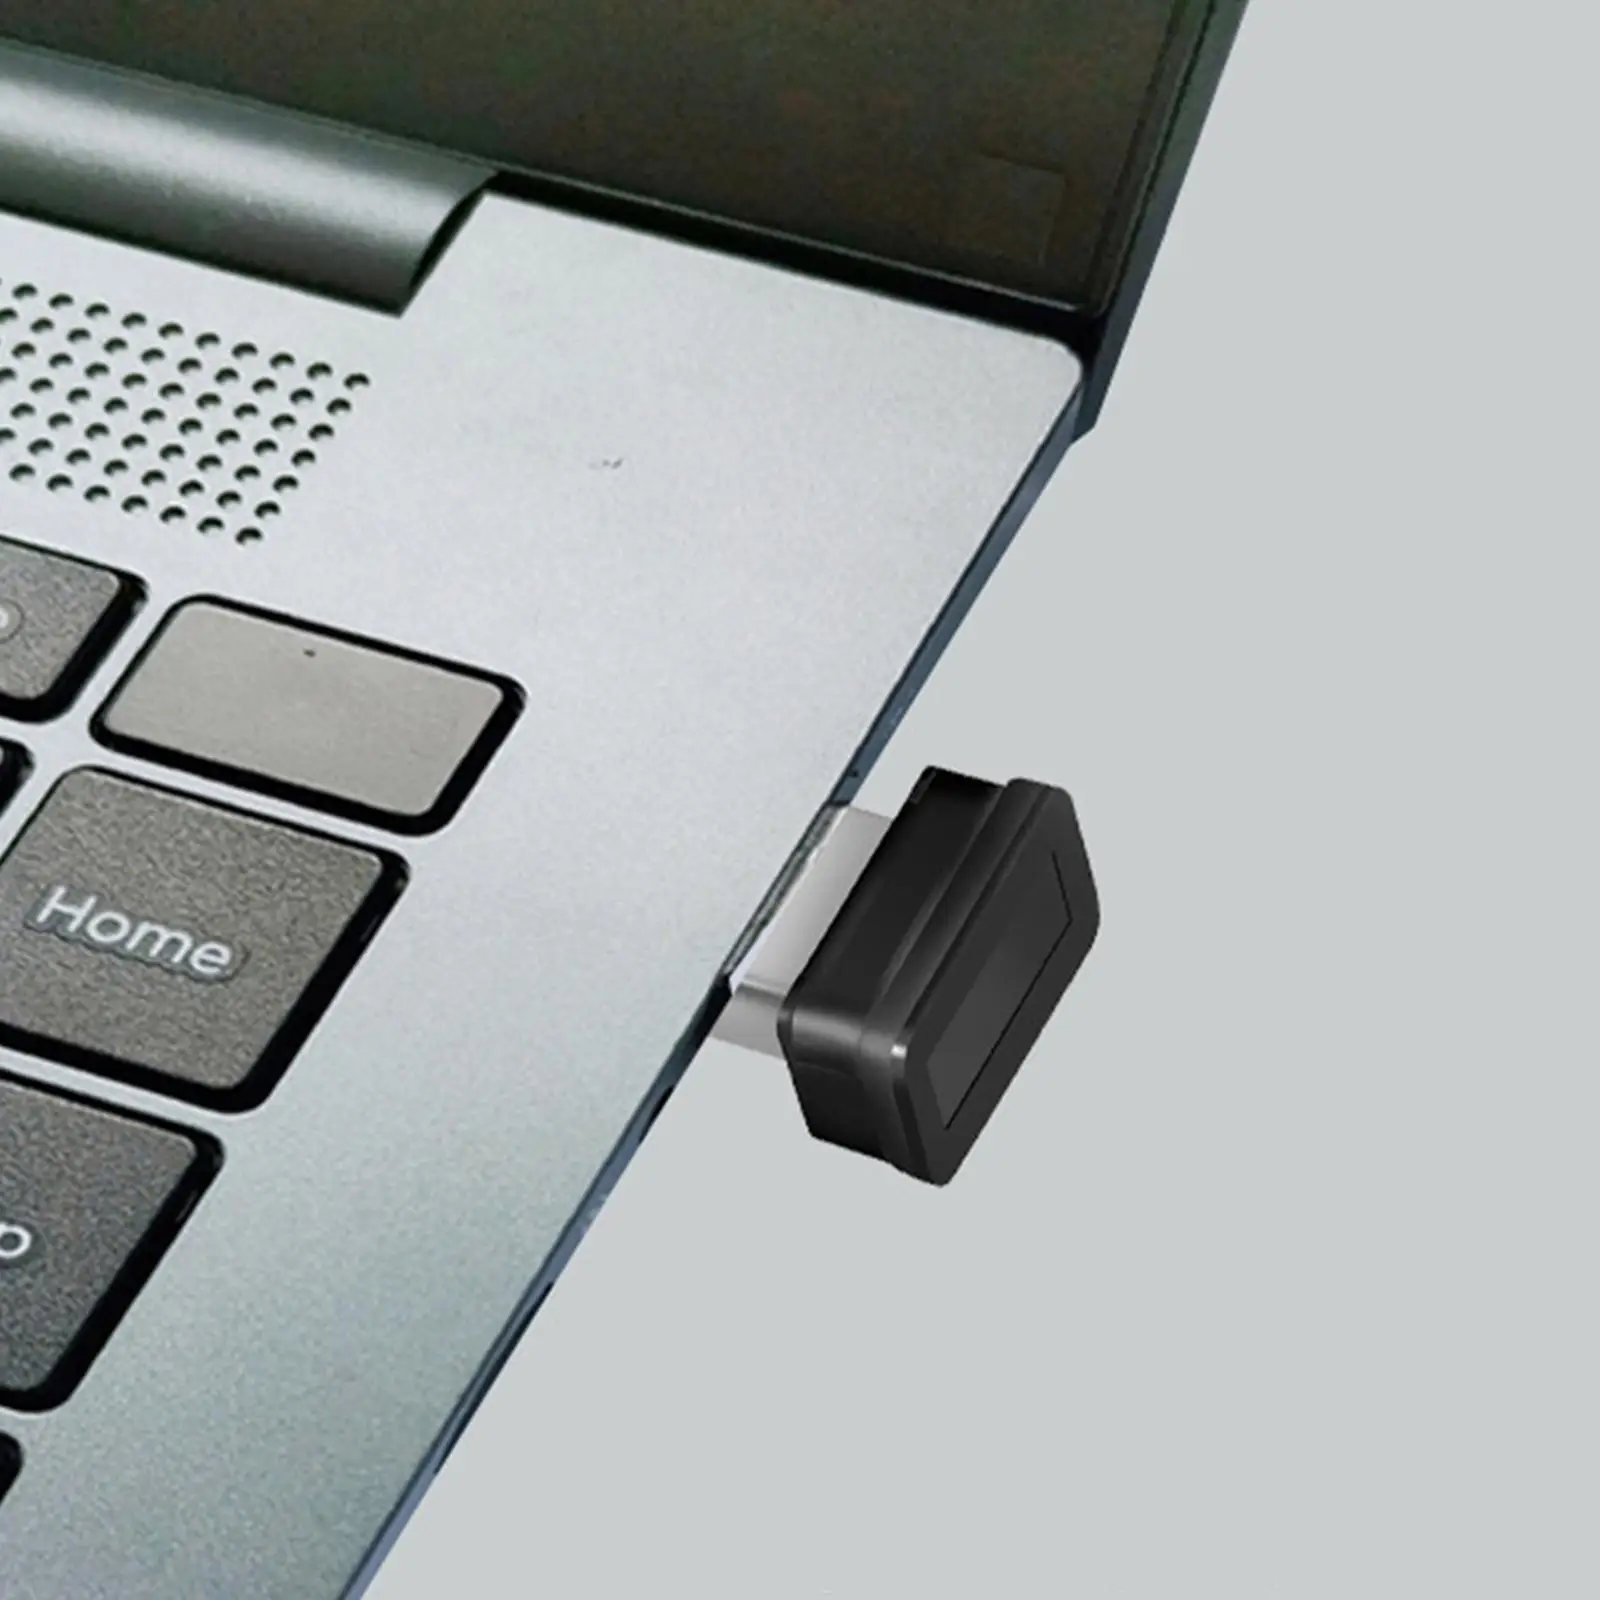 USB Fingerprint Reader 360 Degree Device Biometric for PC Laptop